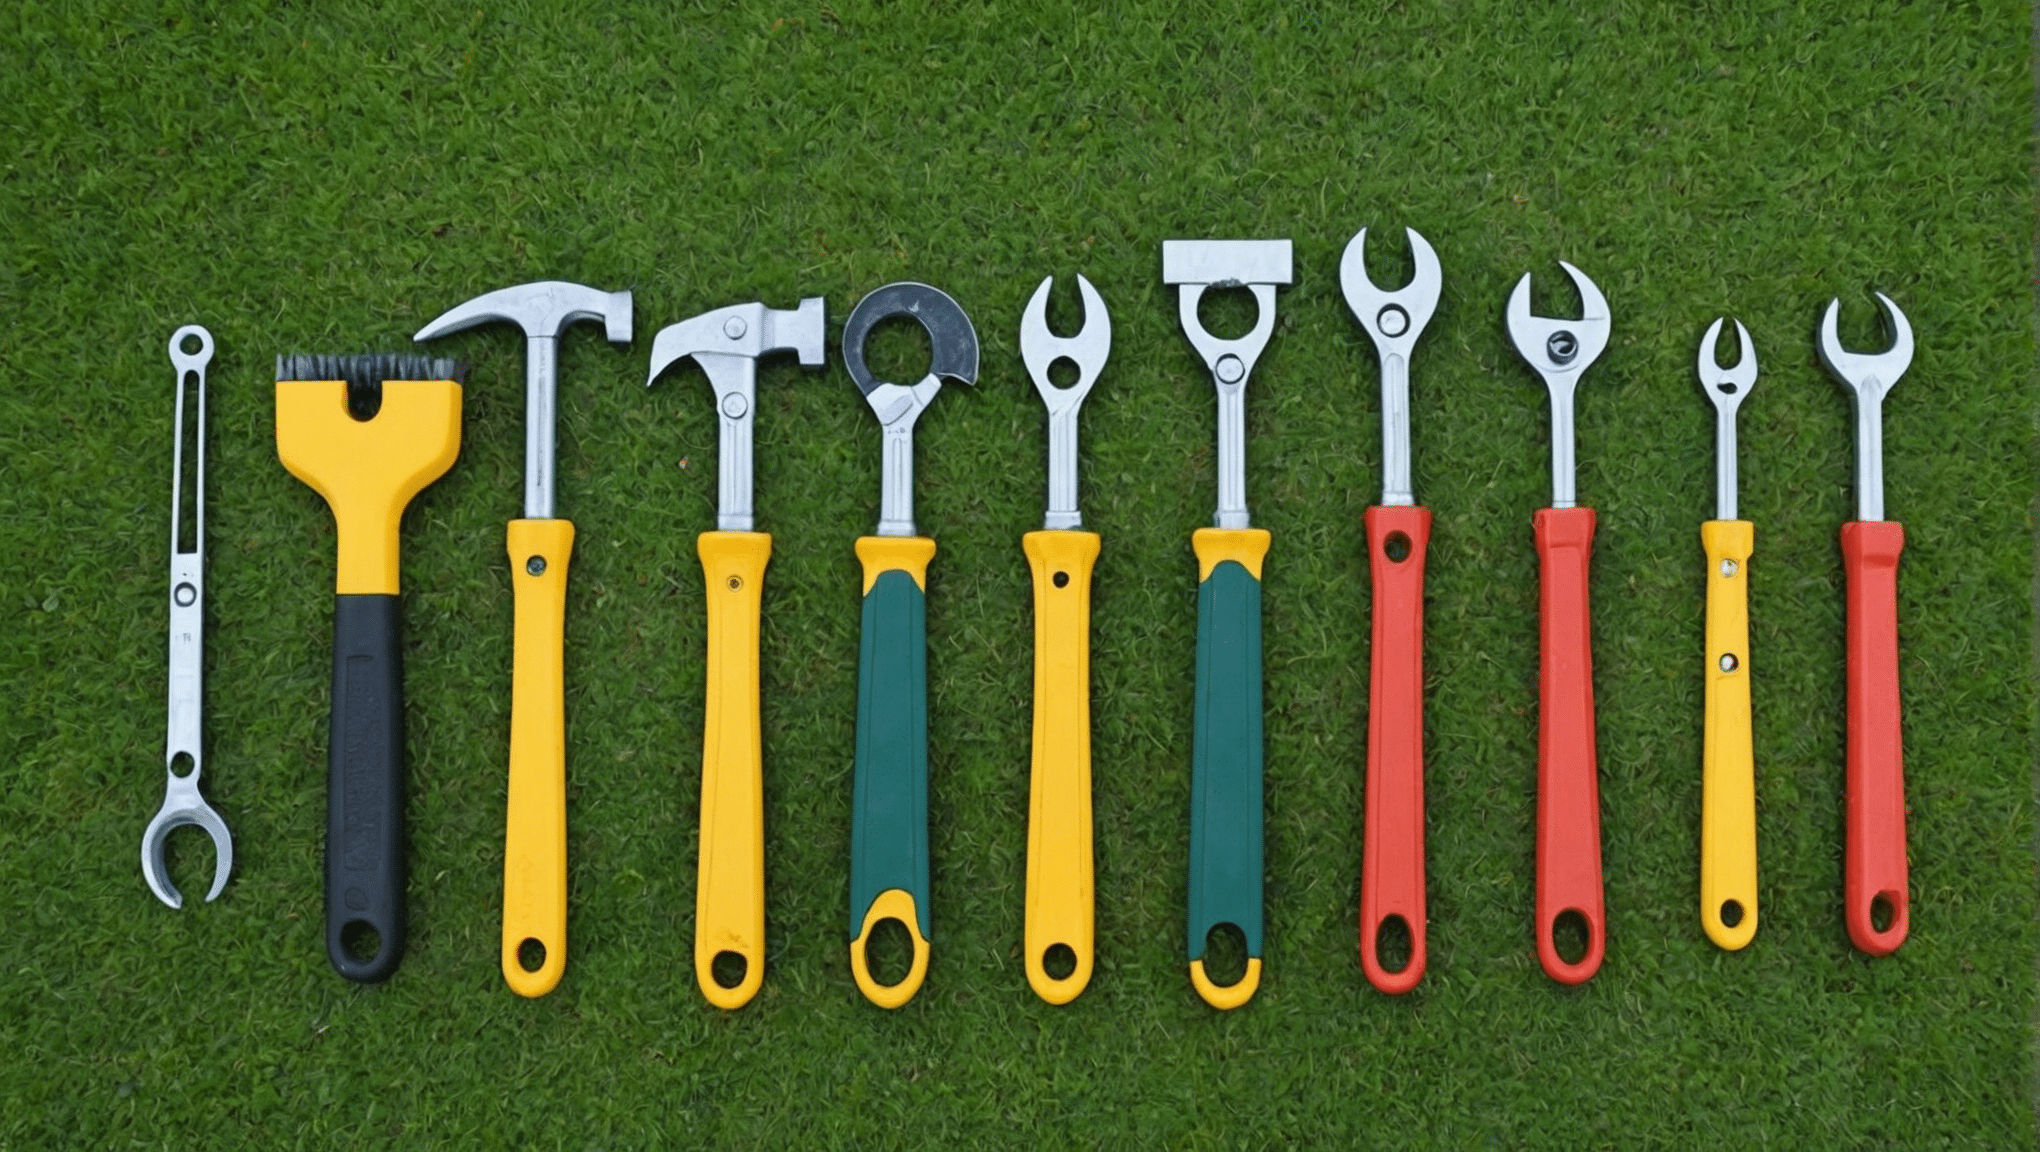 découvrez les outils indispensables pour le jardinage et apprenez à entretenir votre jardin avec efficacité et passion.